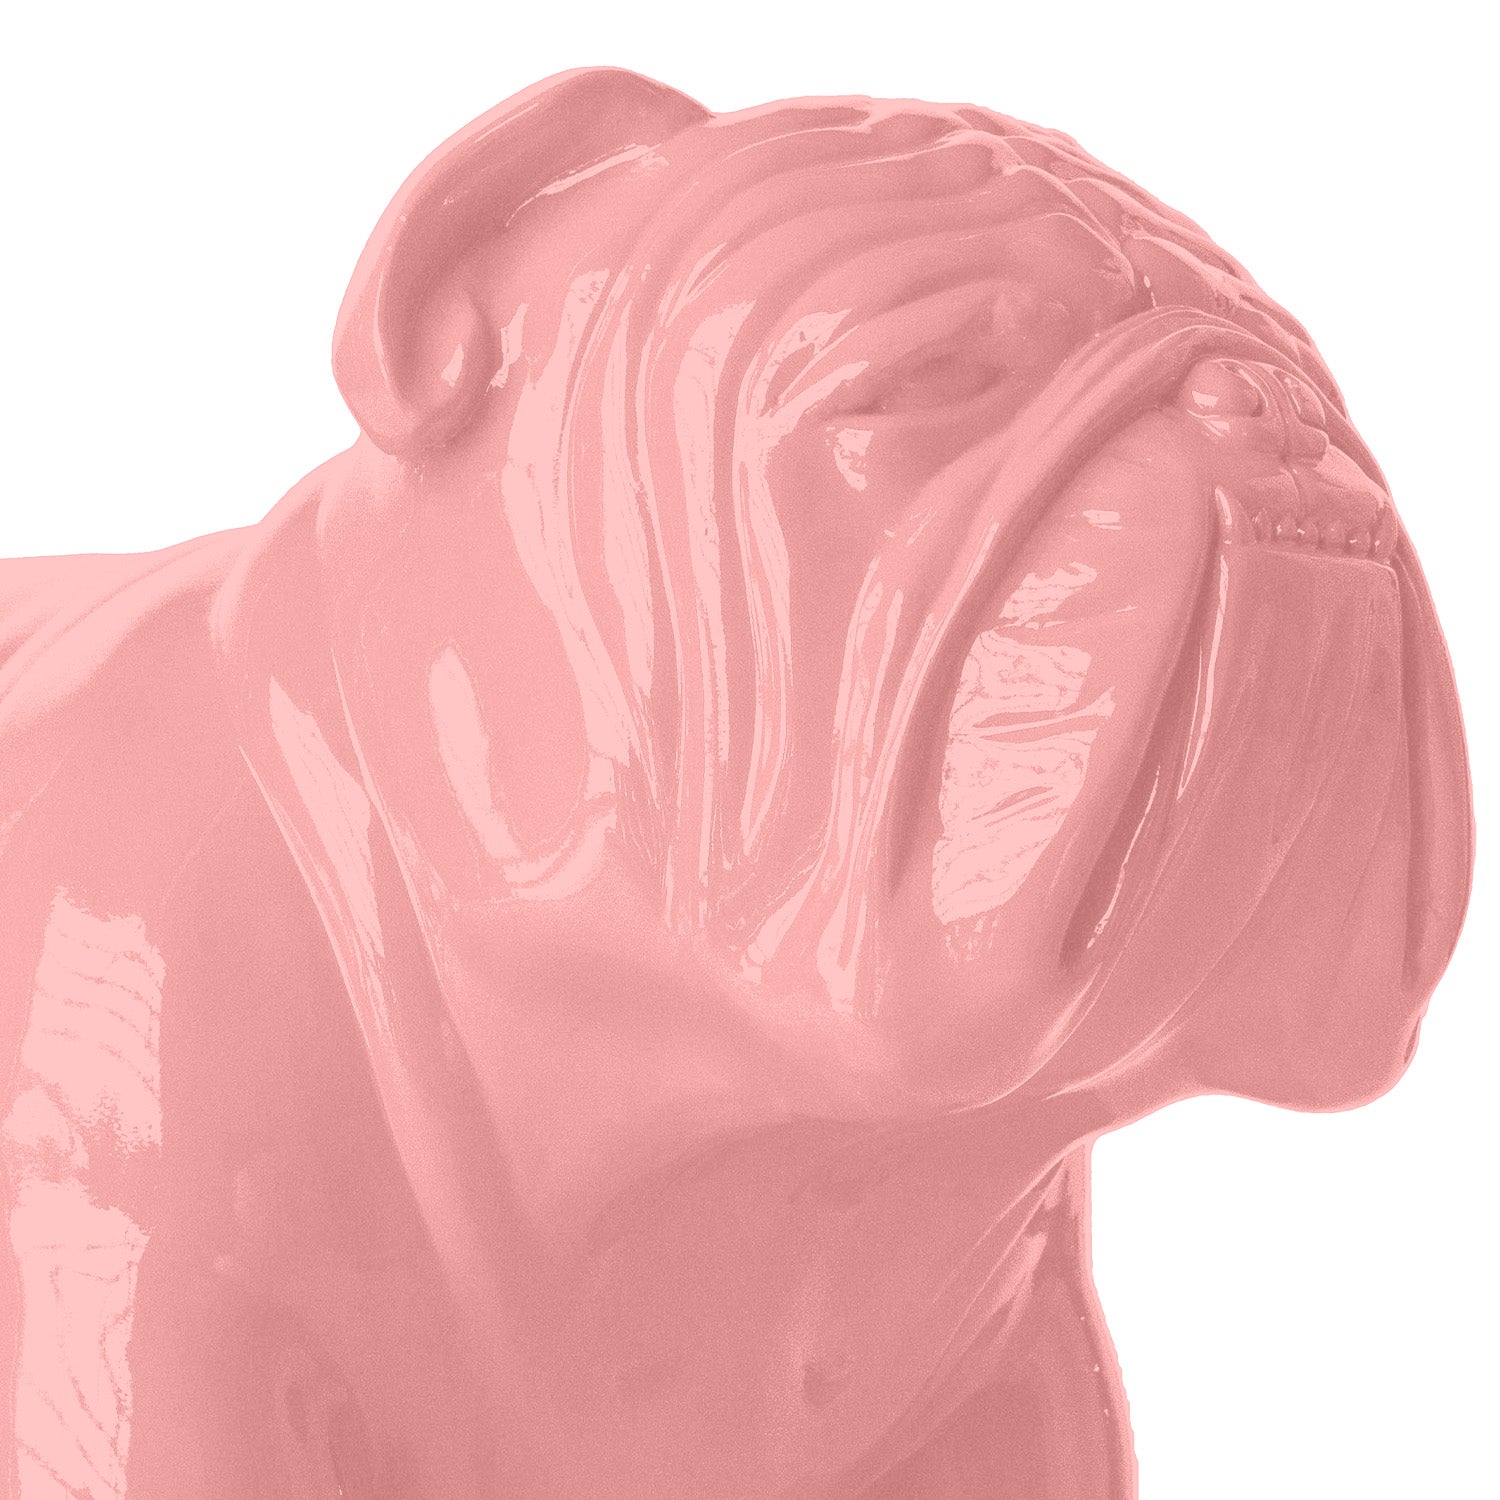 Bulldog Sculpture, Light Pink, MD